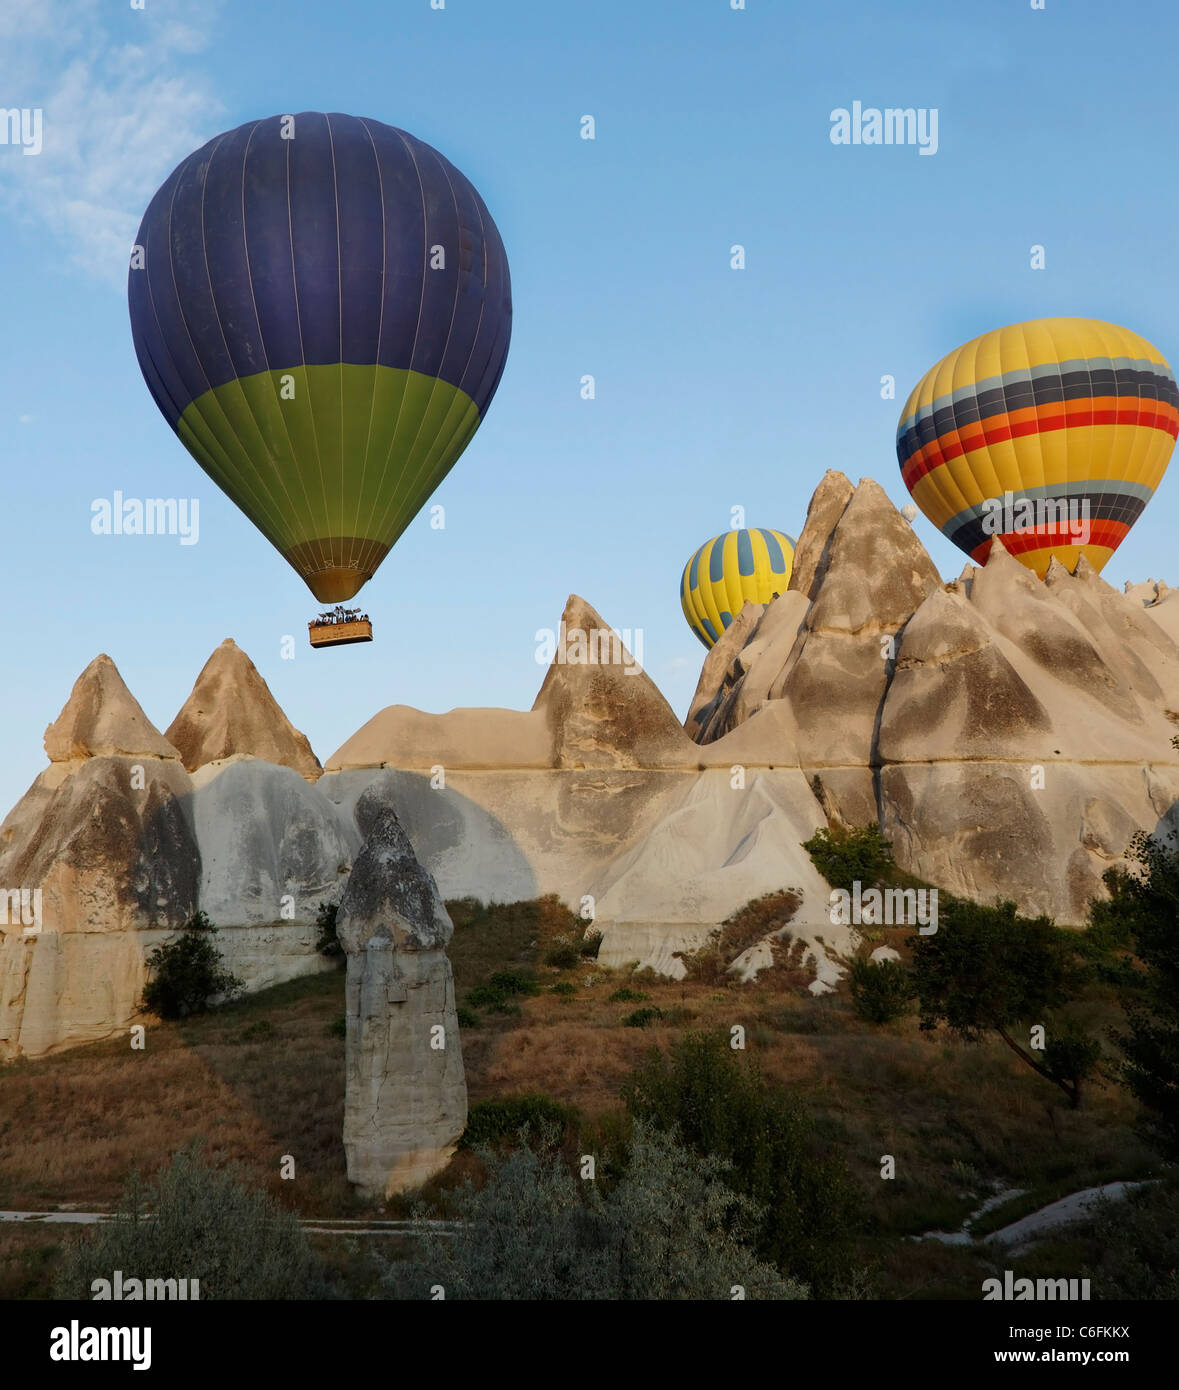 Tres globos aerostáticos multicolores en vuelo de bajo nivel a través de Capadocia picos de piedra caliza del terreno, chimeneas de las hadas, el desierto, Foto de stock